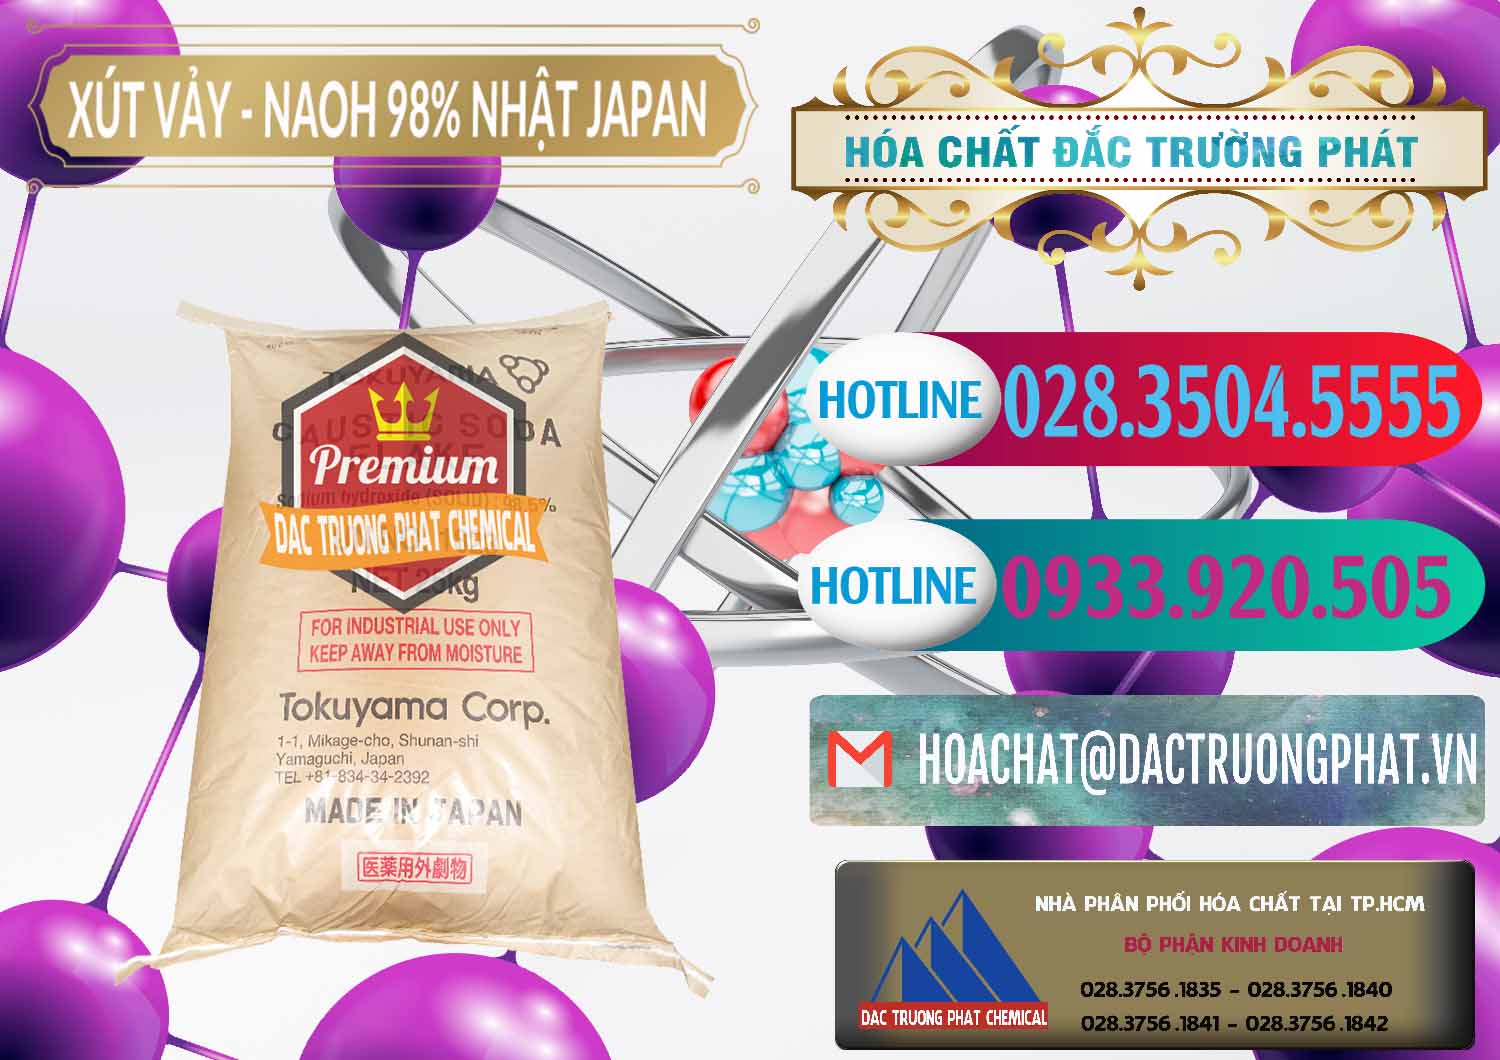 Công ty chuyên cung ứng _ bán Xút Vảy - NaOH Vảy 98% Tokuyama Nhật Bản Japan - 0173 - Cty chuyên phân phối & kinh doanh hóa chất tại TP.HCM - truongphat.vn